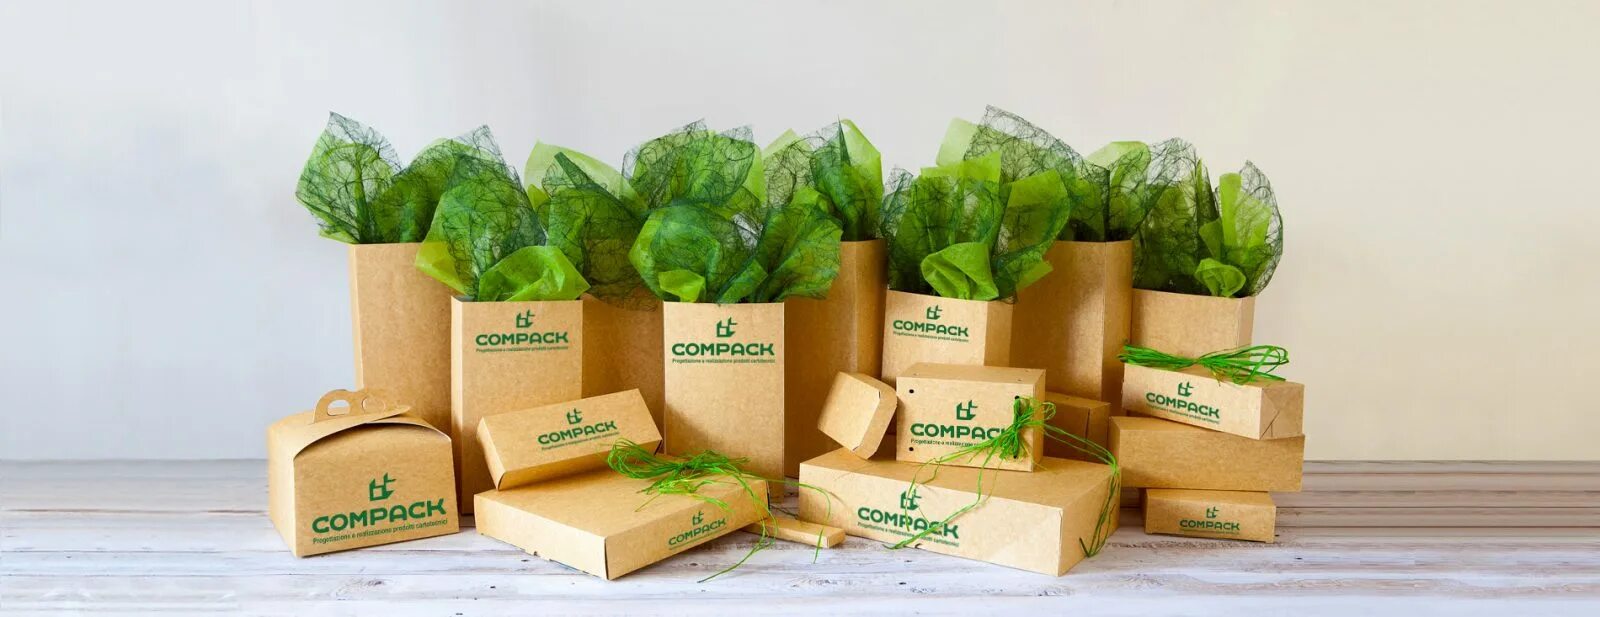 Органическая упаковка для продуктов. Экологичная упаковка. Эко продукты упаковка. Экологичные материалы упаковки.